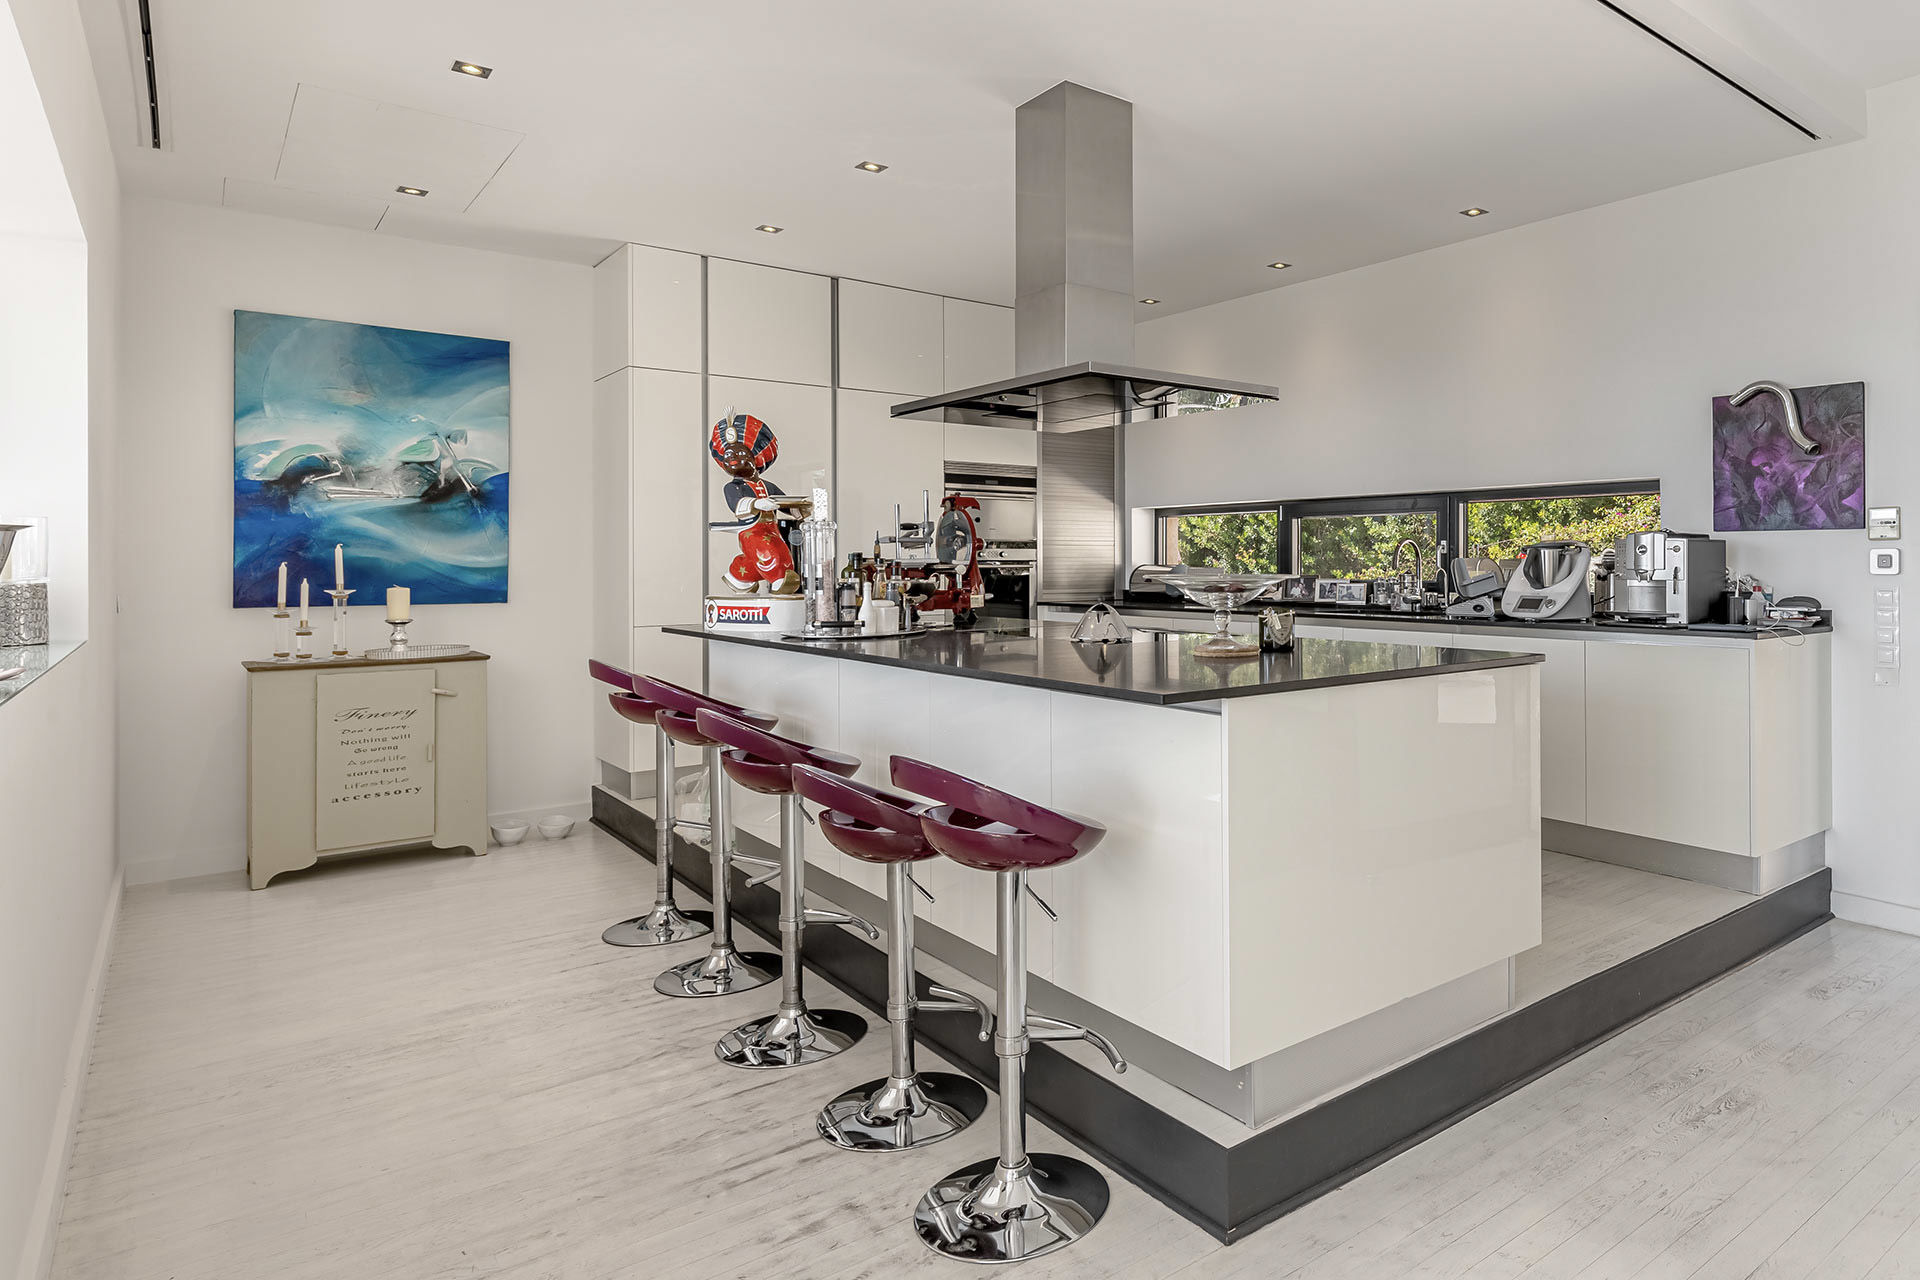 Moderne Villa mit Meerblick in Costa d’en Blanes - Moderne Küche mit Insel